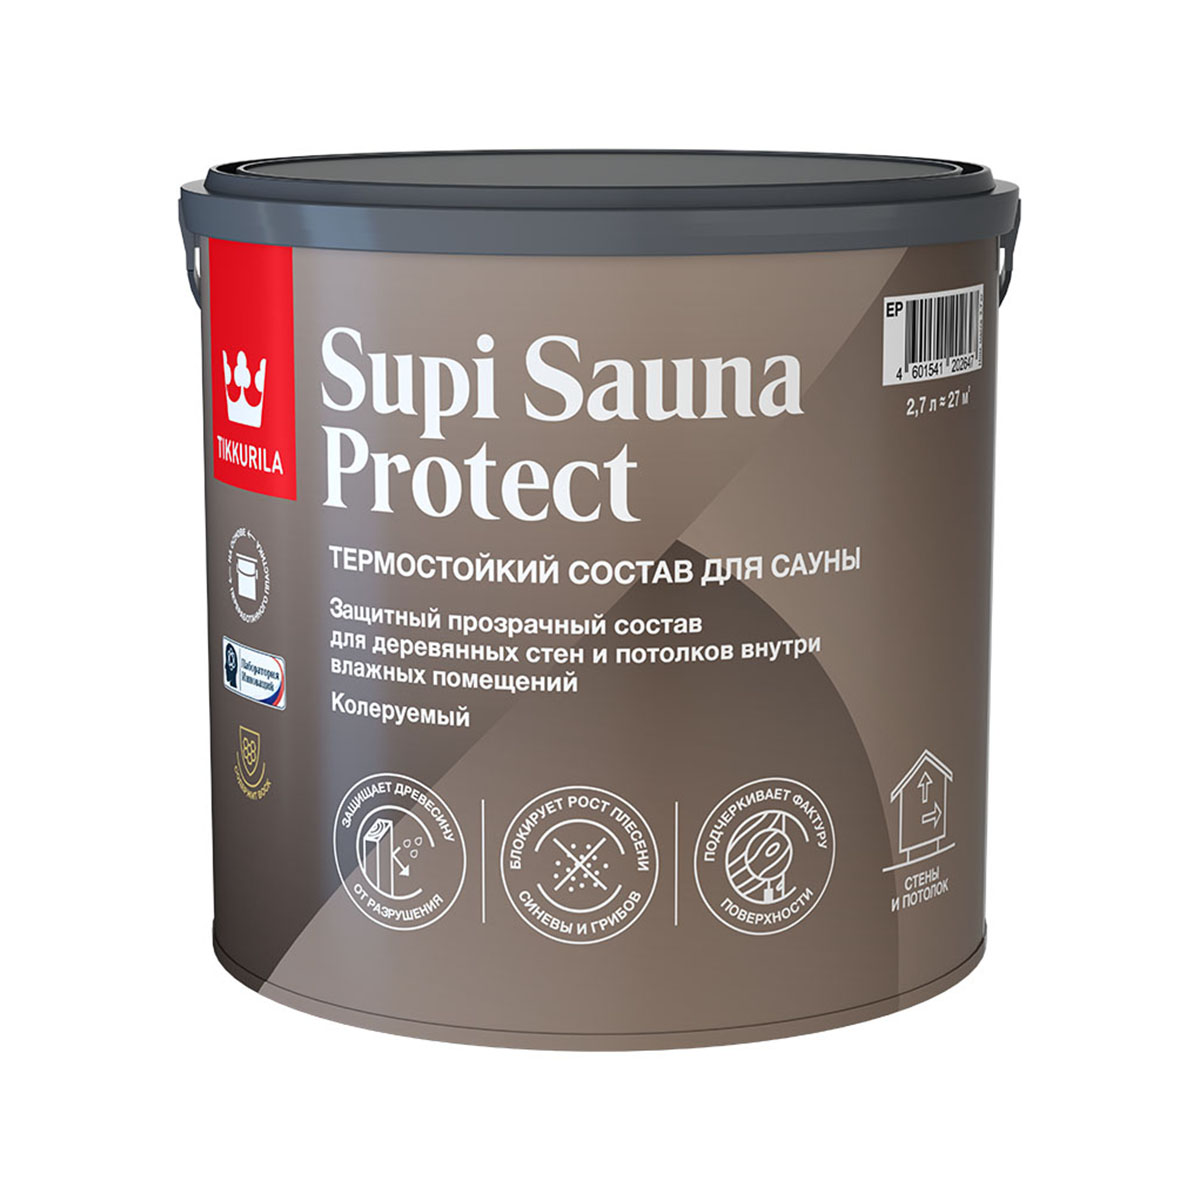 Супи сауна протект ep  2,7 л (1) защитный состав для саун п/матов. "тиккурила"